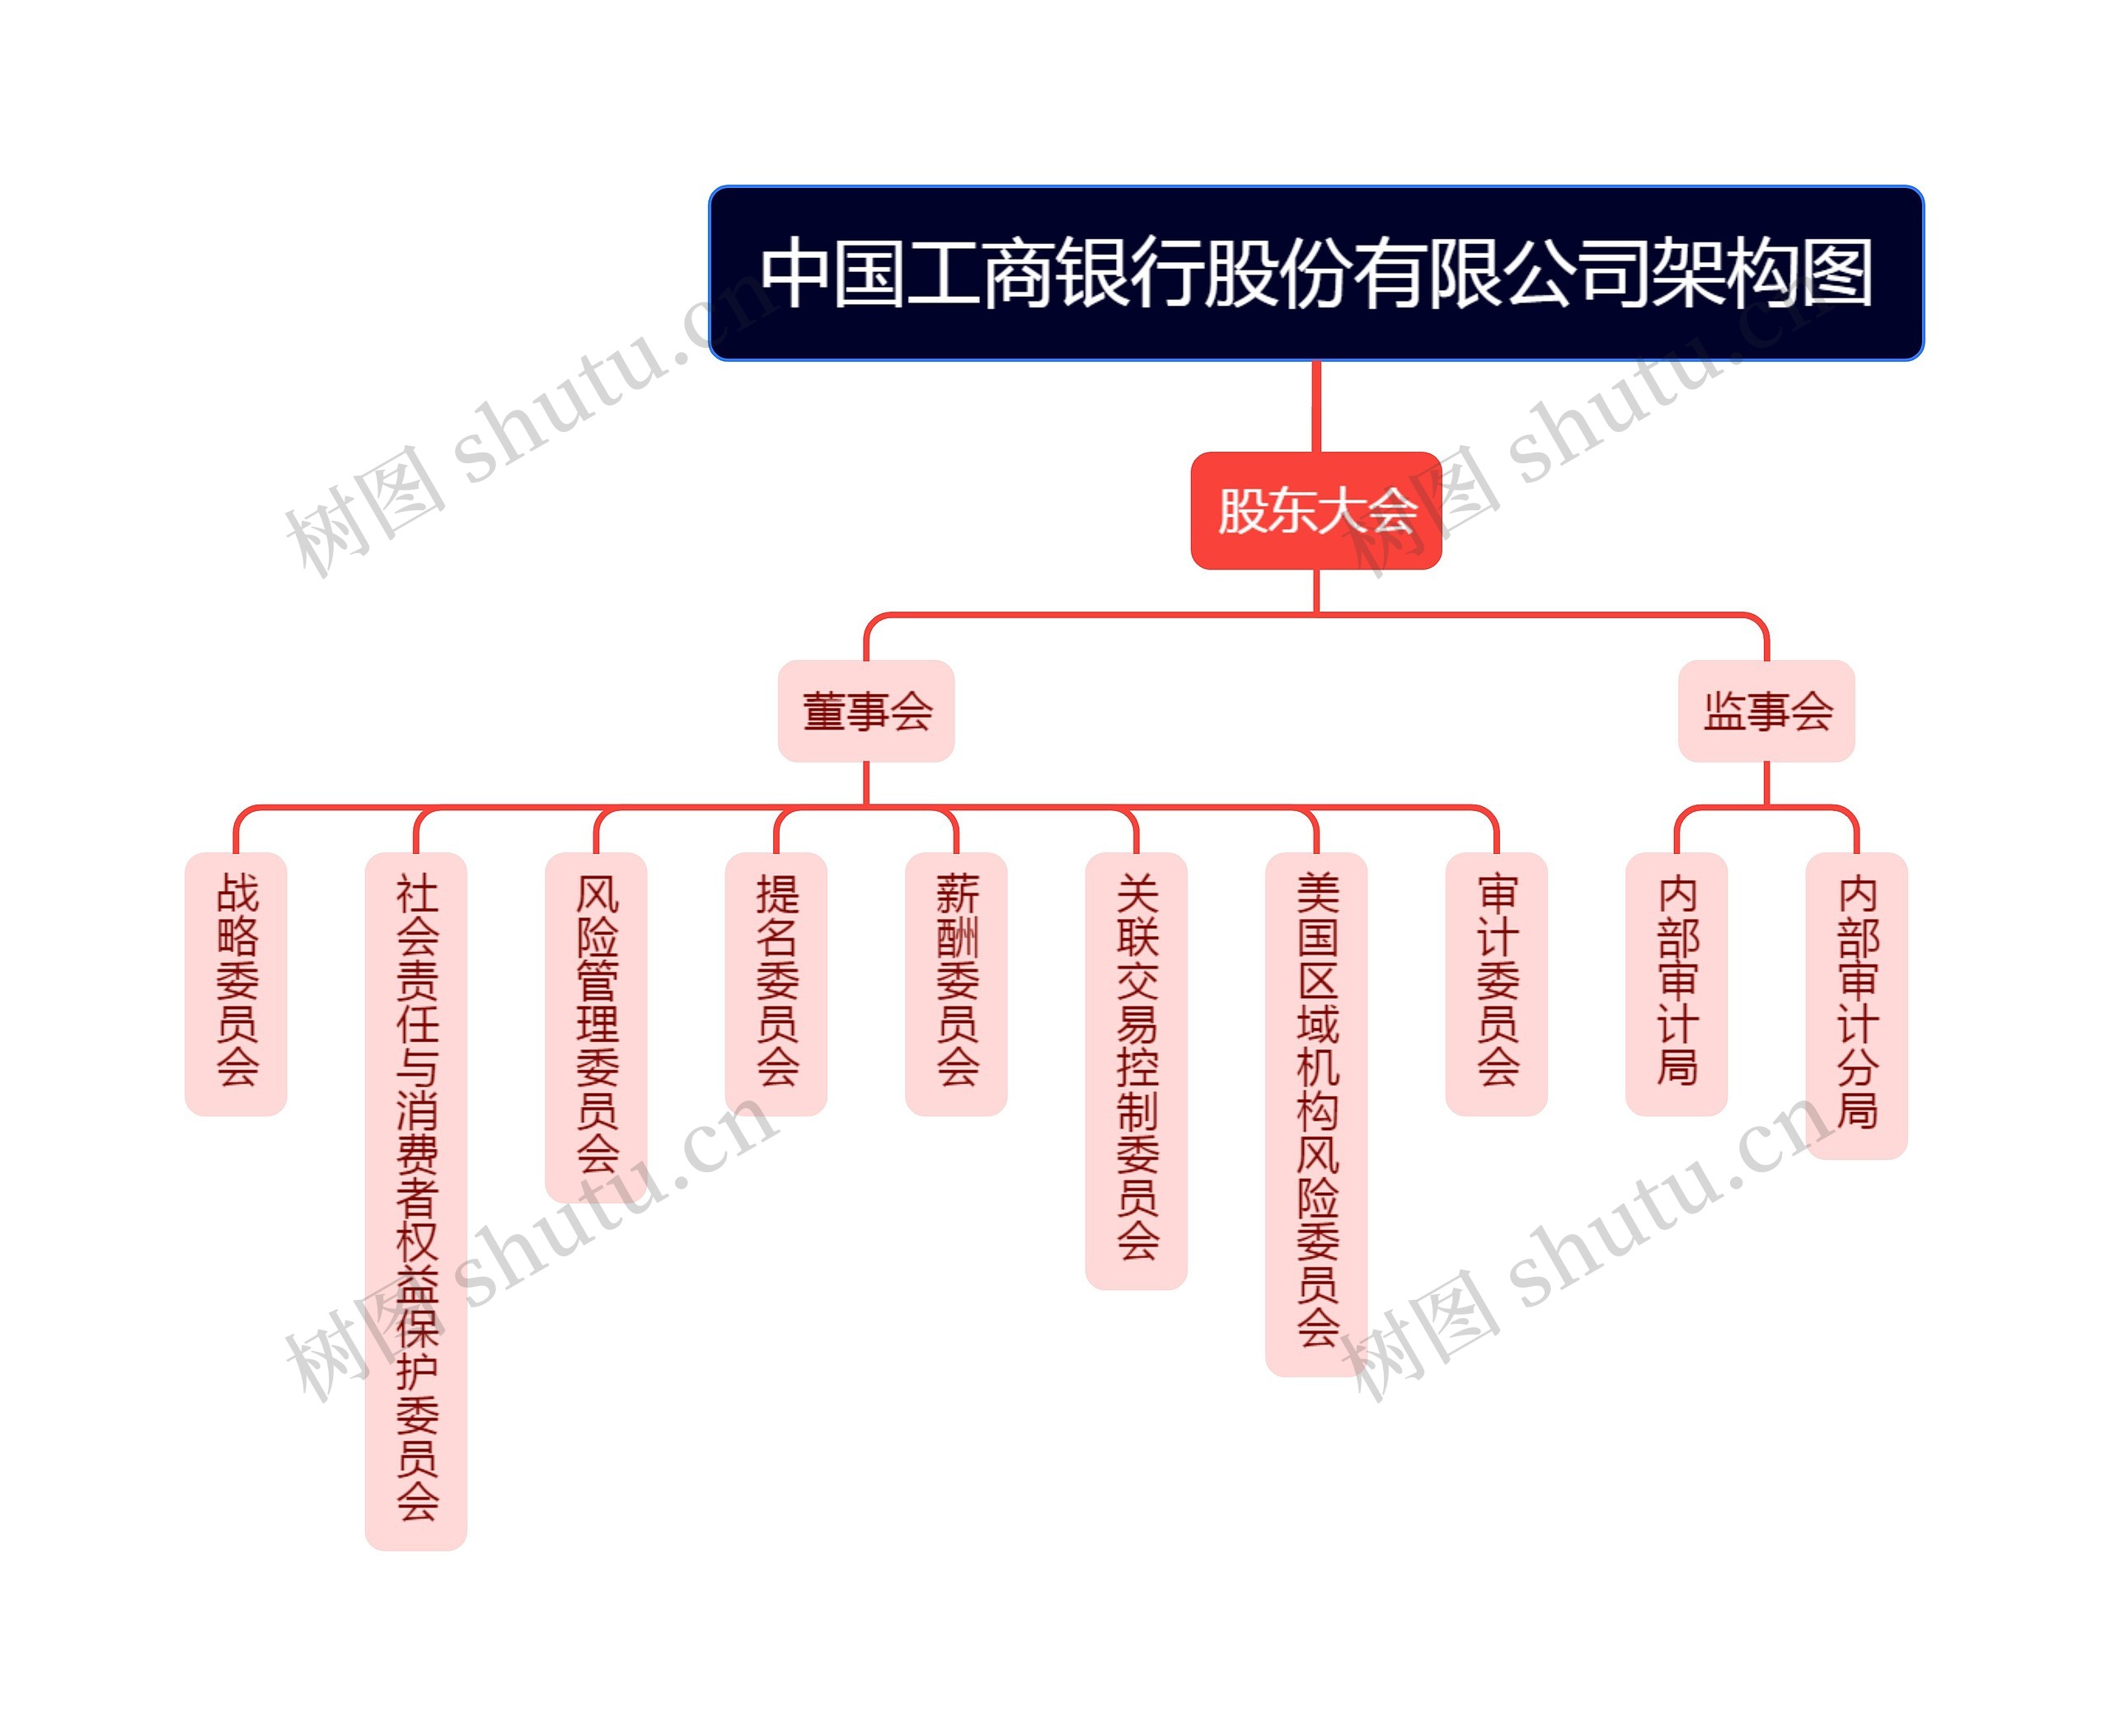 中国工商银行股份有限公司架构图思维导图